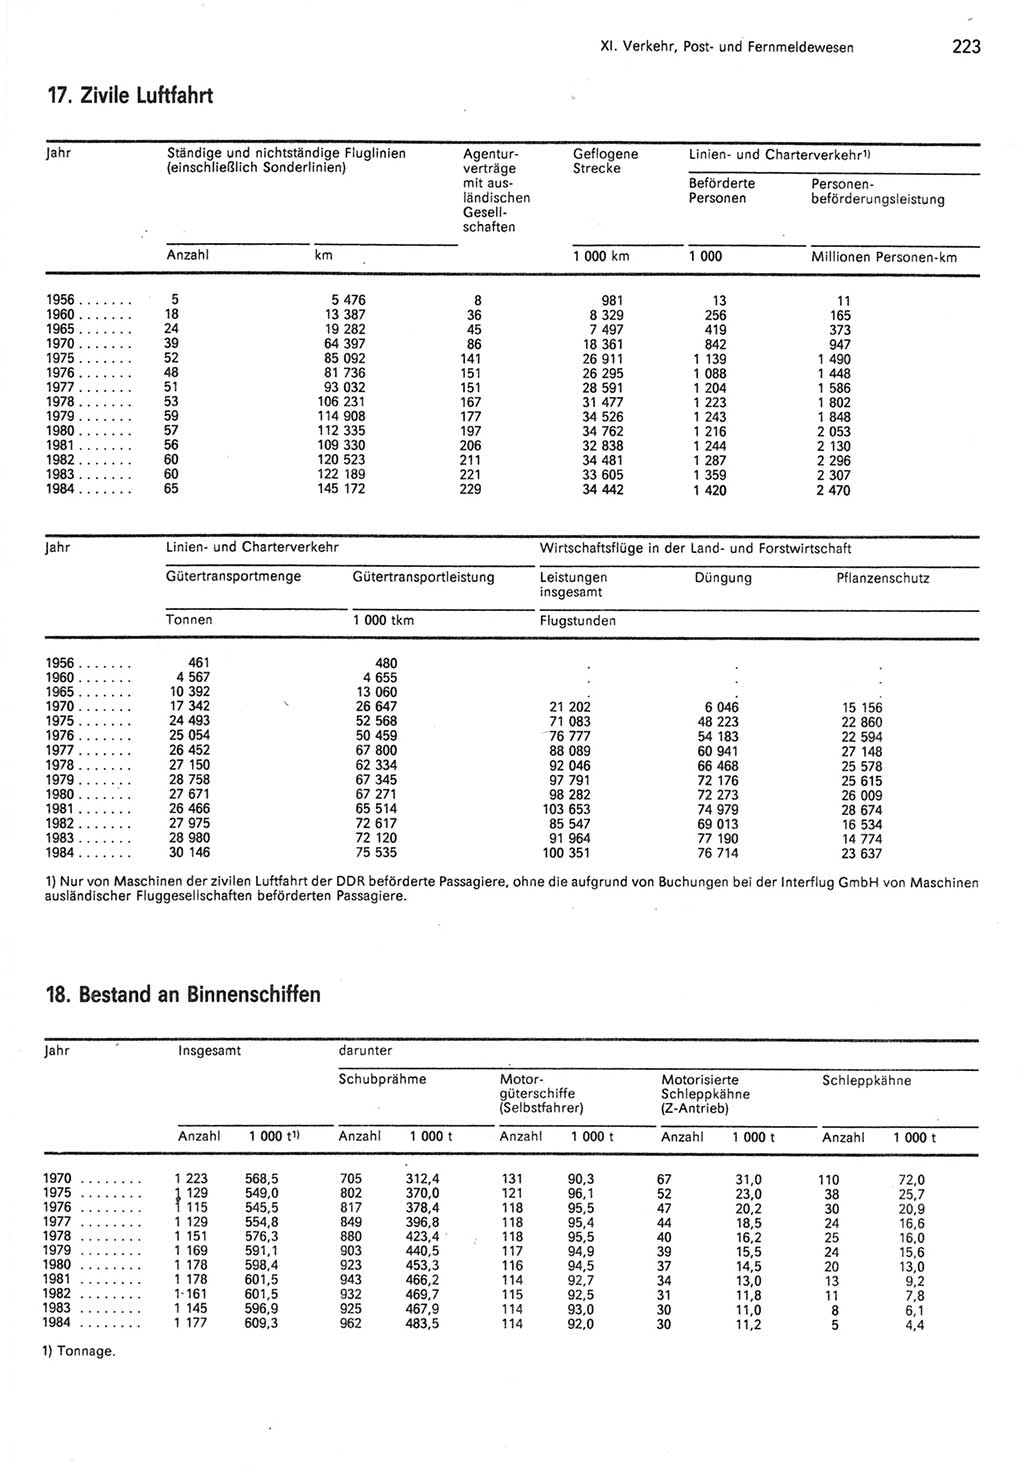 Statistisches Jahrbuch der Deutschen Demokratischen Republik (DDR) 1985, Seite 223 (Stat. Jb. DDR 1985, S. 223)